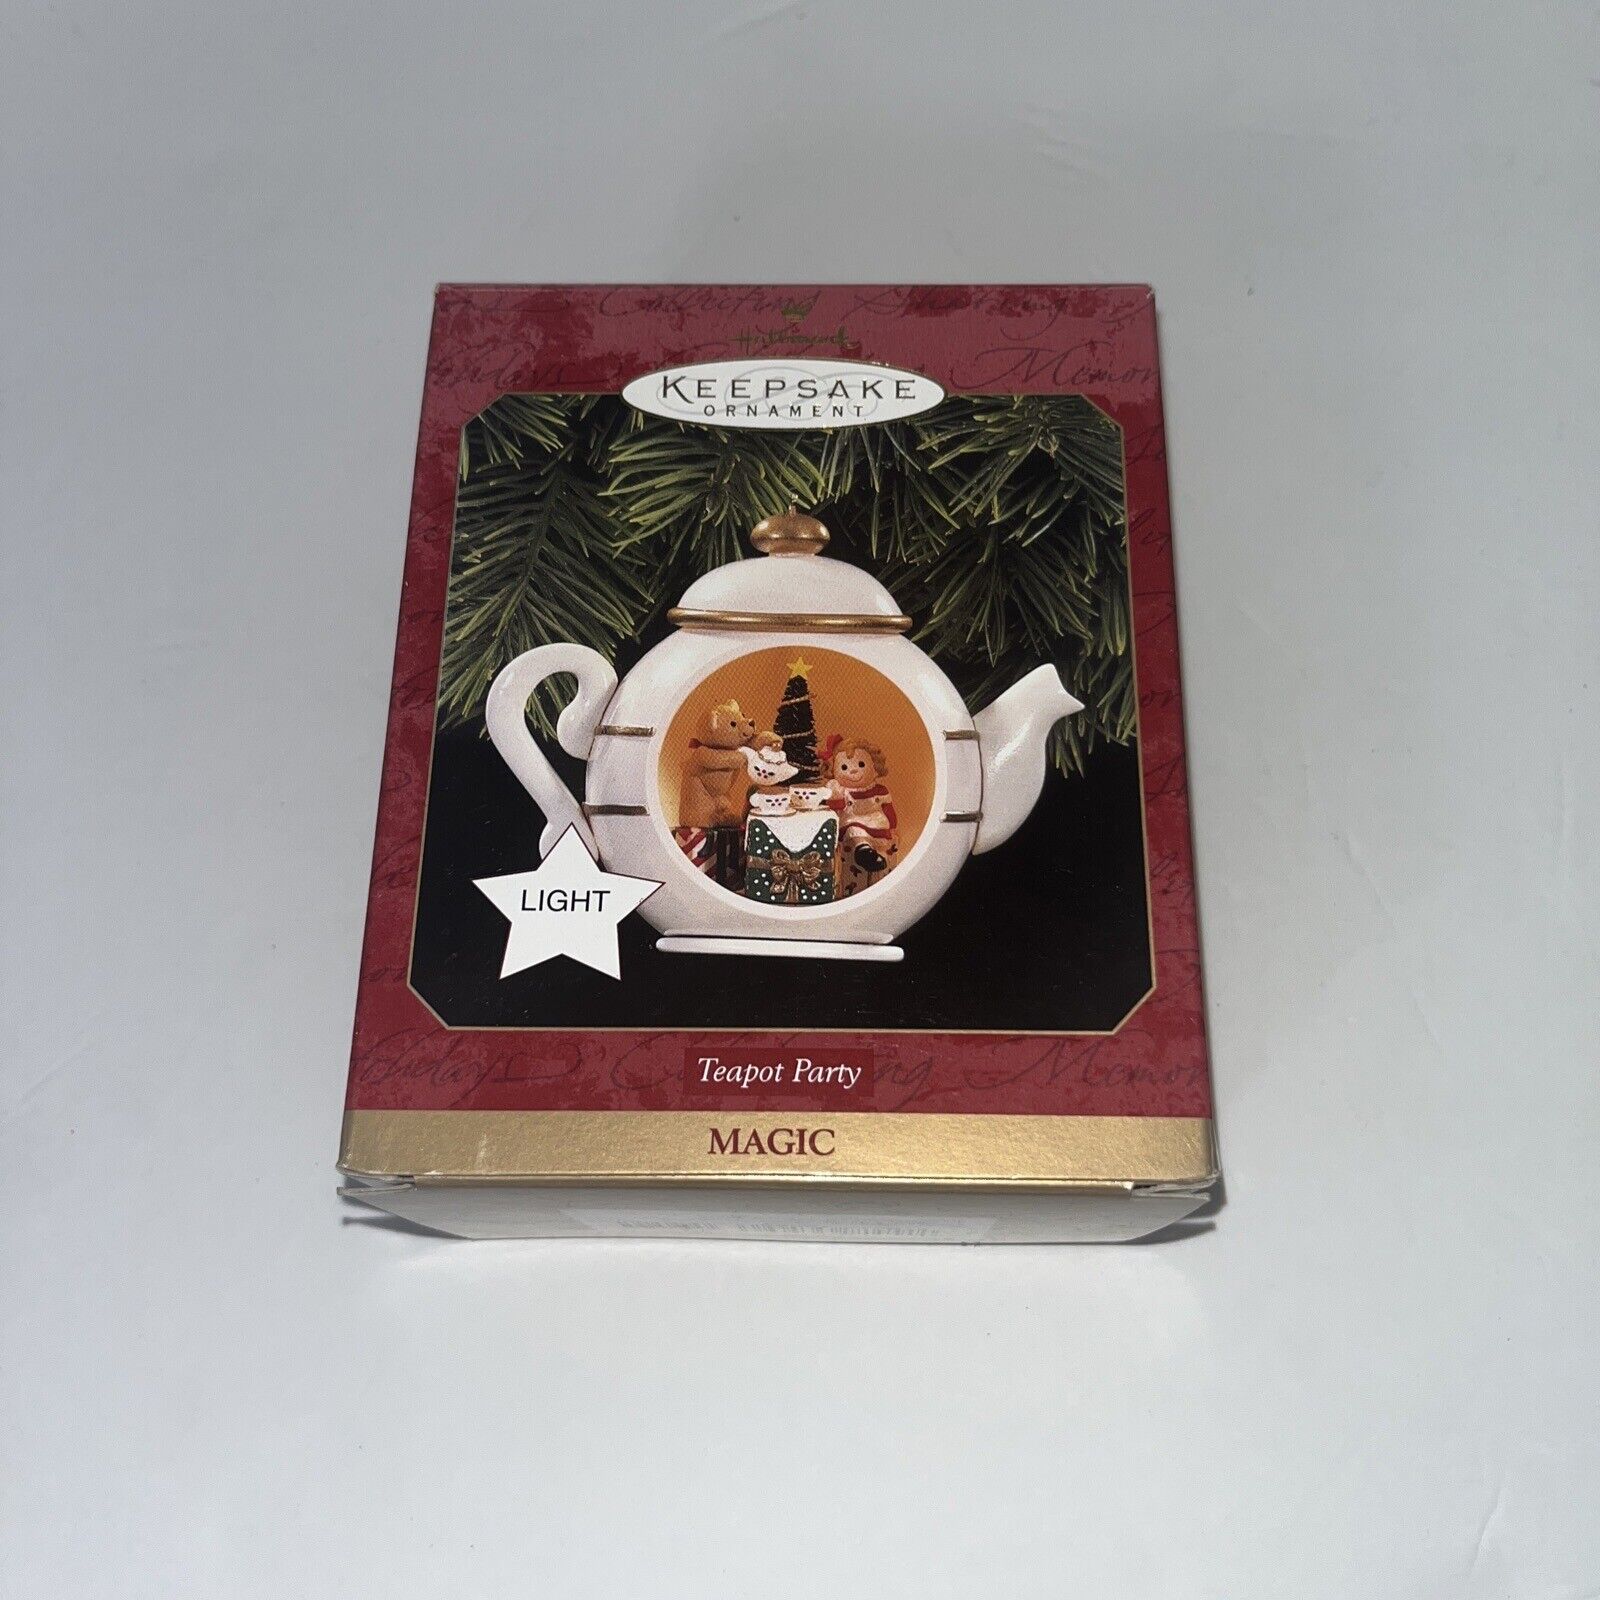 Vtg Hallmark Keepsake 1997 “Teapot Party” Lights & Magic Teapot W/ Bear